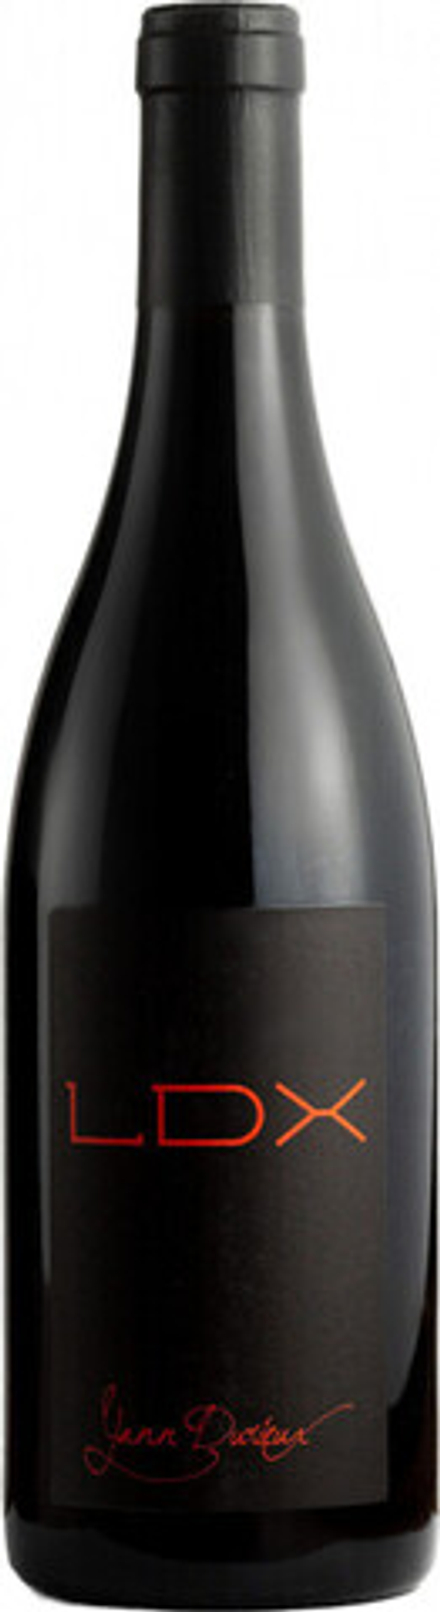 Вино Yann Durieux LDX, 0,75 л.